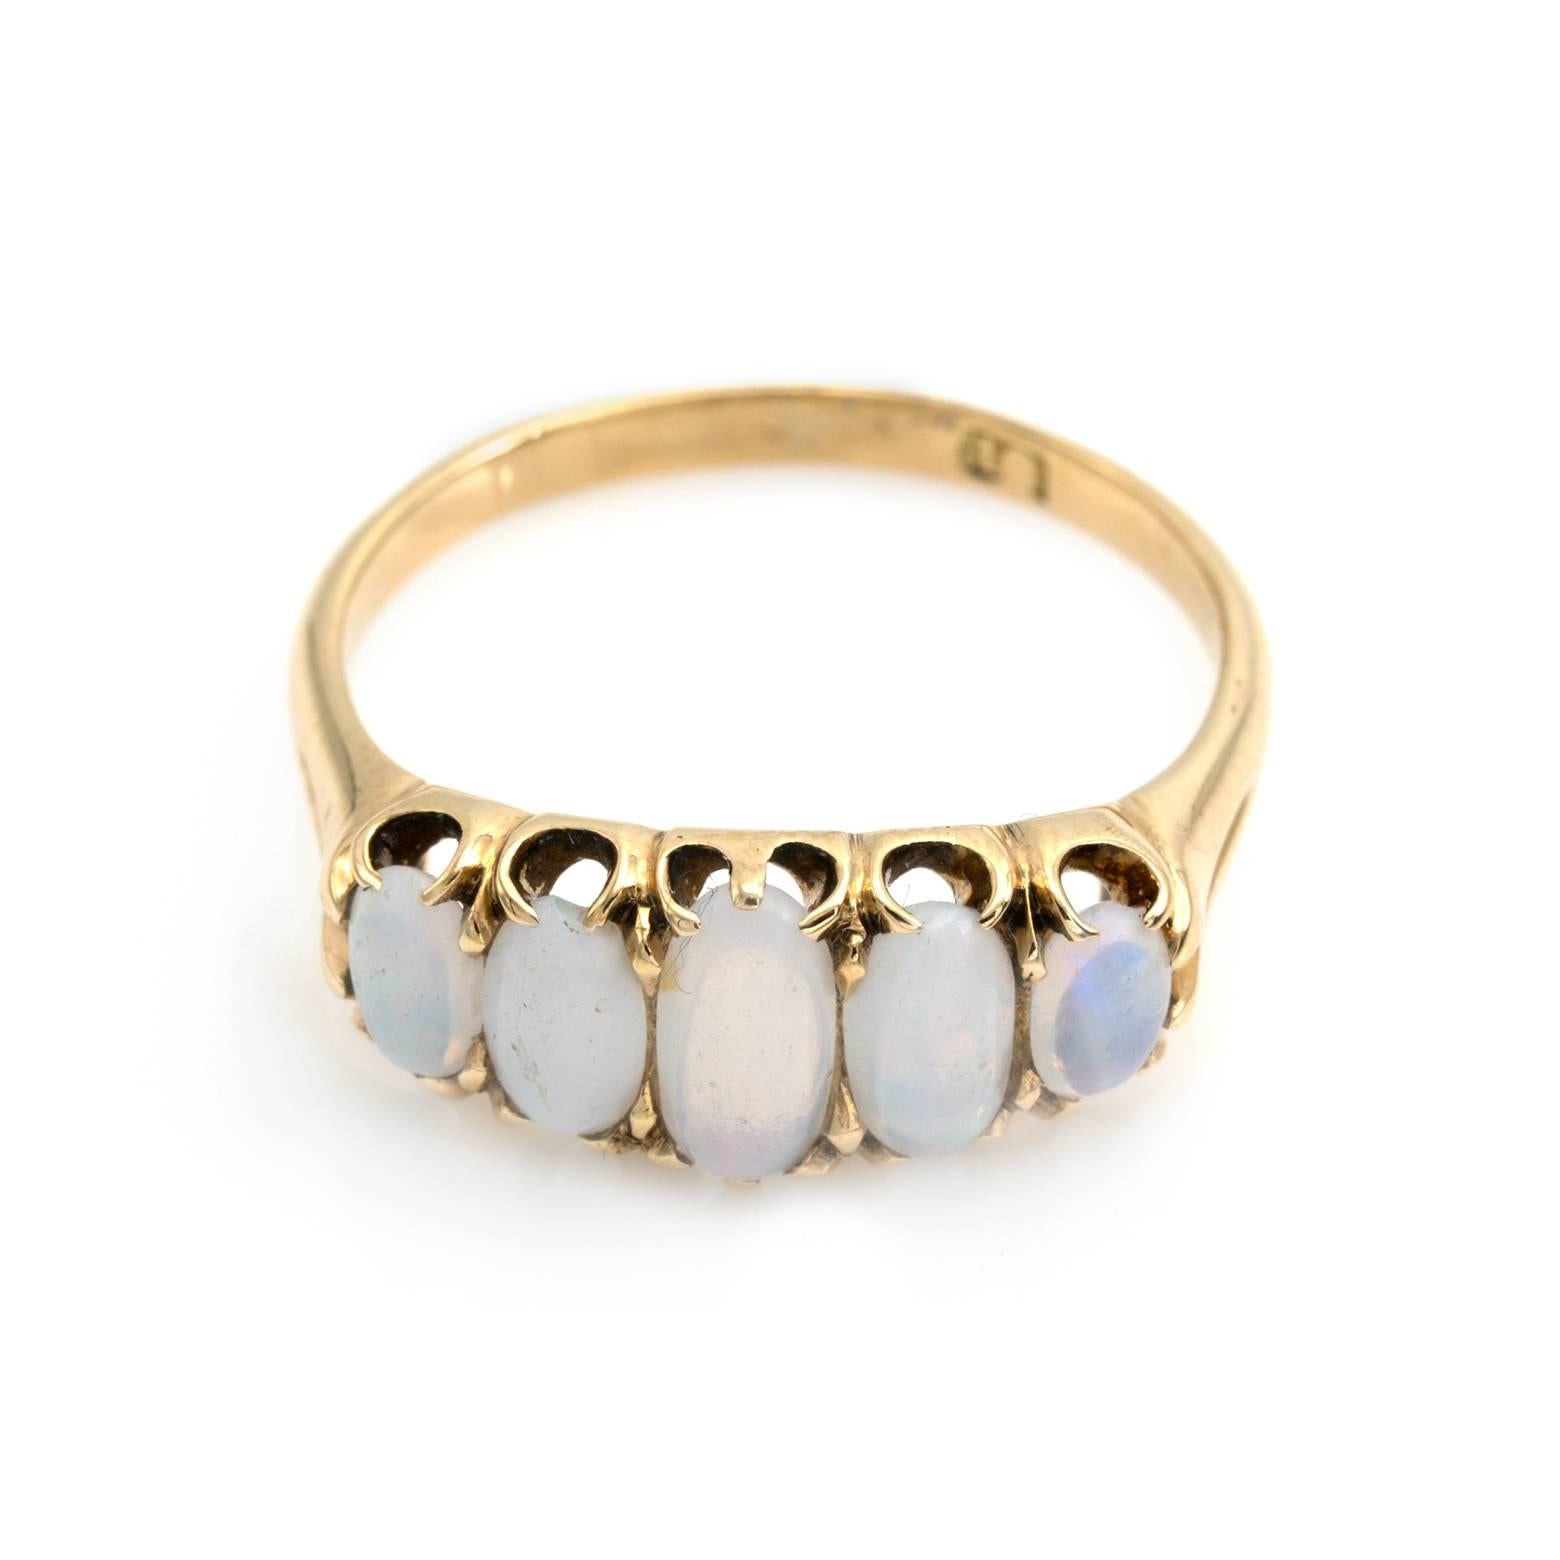 Diese saubere fünf ovalen Opal Ring ist Zacken in 18K Gelbgold und in ausgezeichnetem Zustand gesetzt. Um 1910 schimmern die Opale in Feuerrot, Grün, Orange, Blau und Violett. Größe 8,25 und kann nach Größe angepasst werden. 